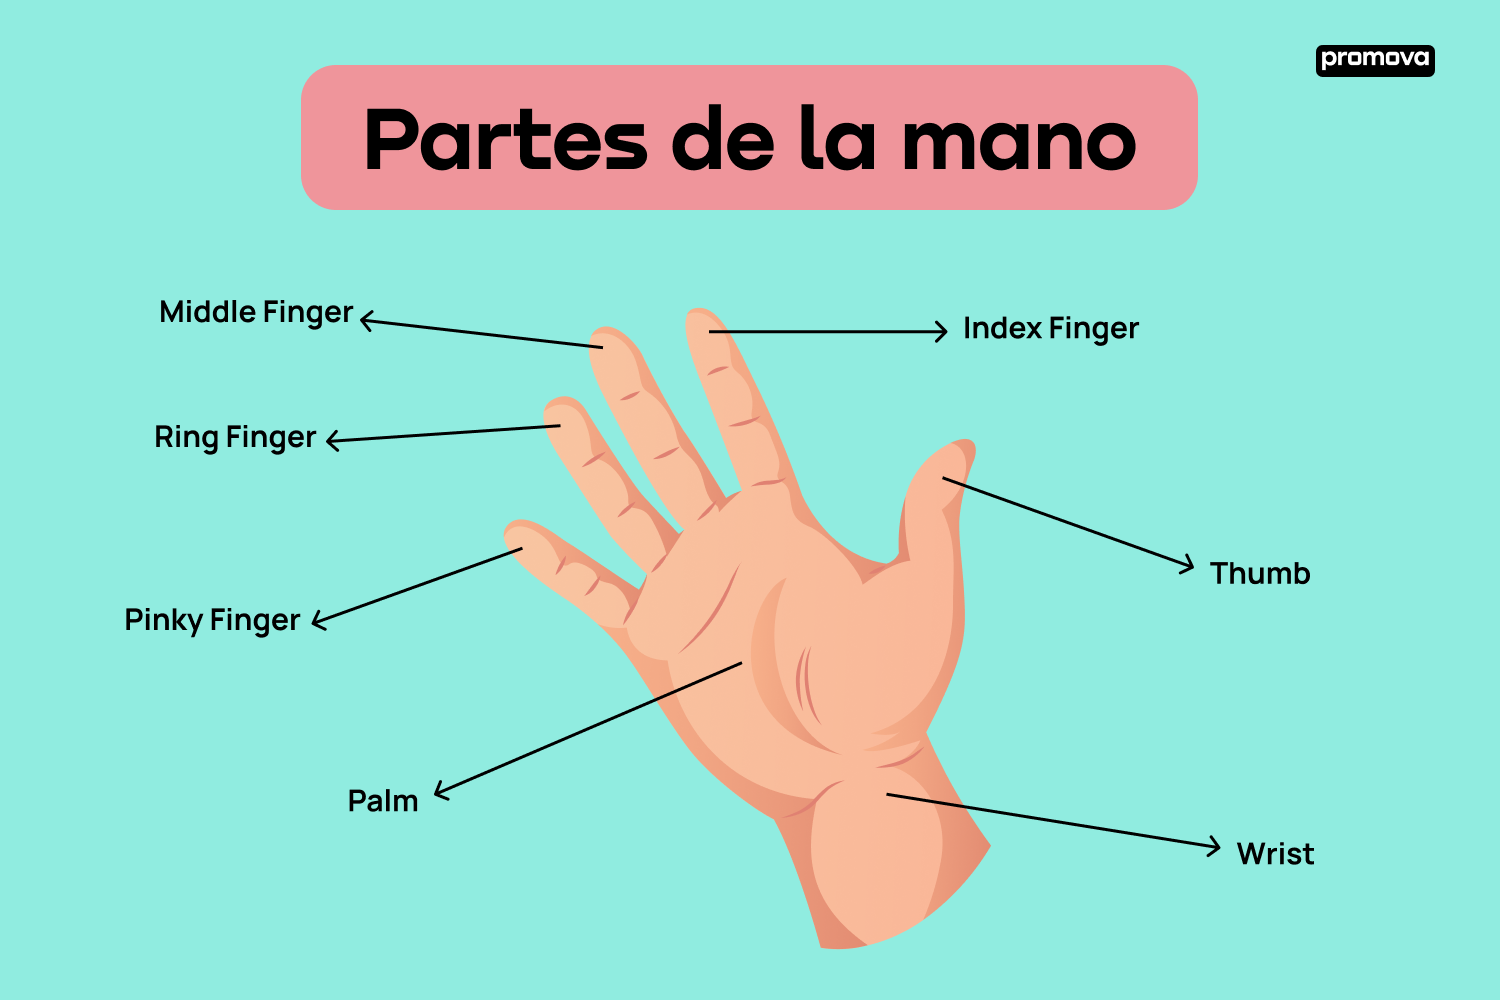 Conoce el vocabulario y la estructura de las partes de la mano en inglés